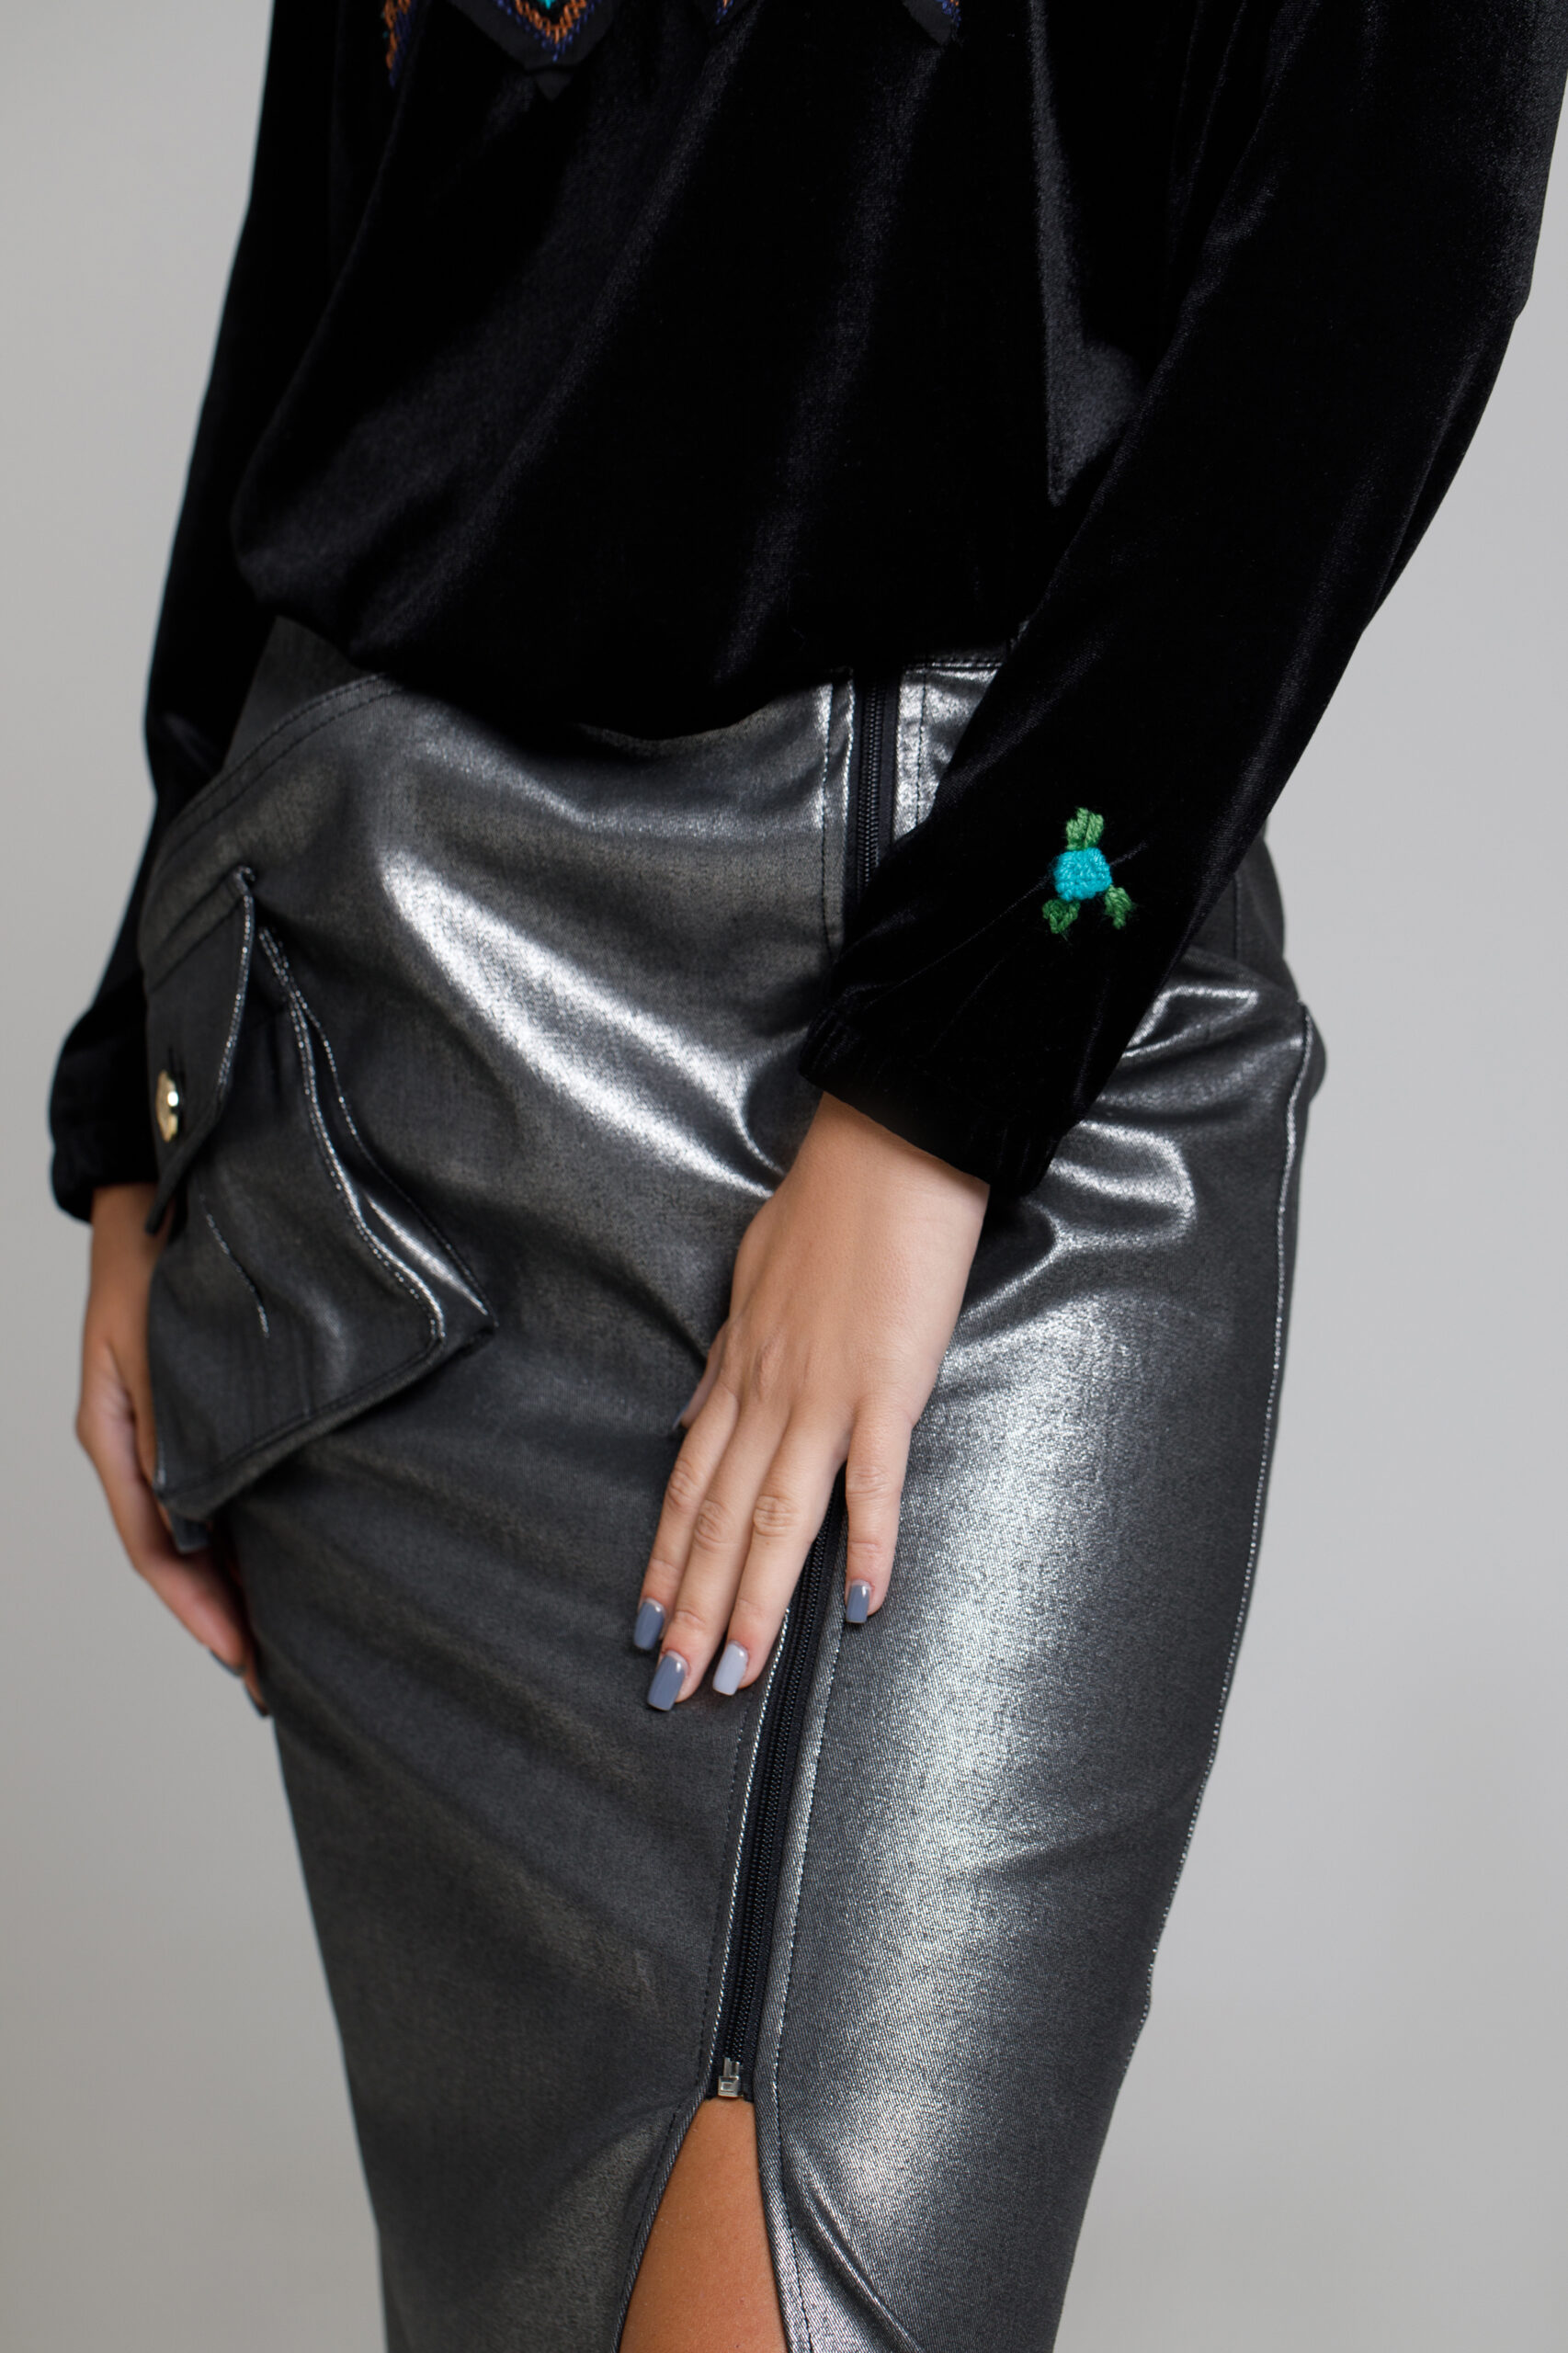 Bluza TIGER din catifea neagra. Materiale naturale, design unicat, cu broderie si aplicatii handmade